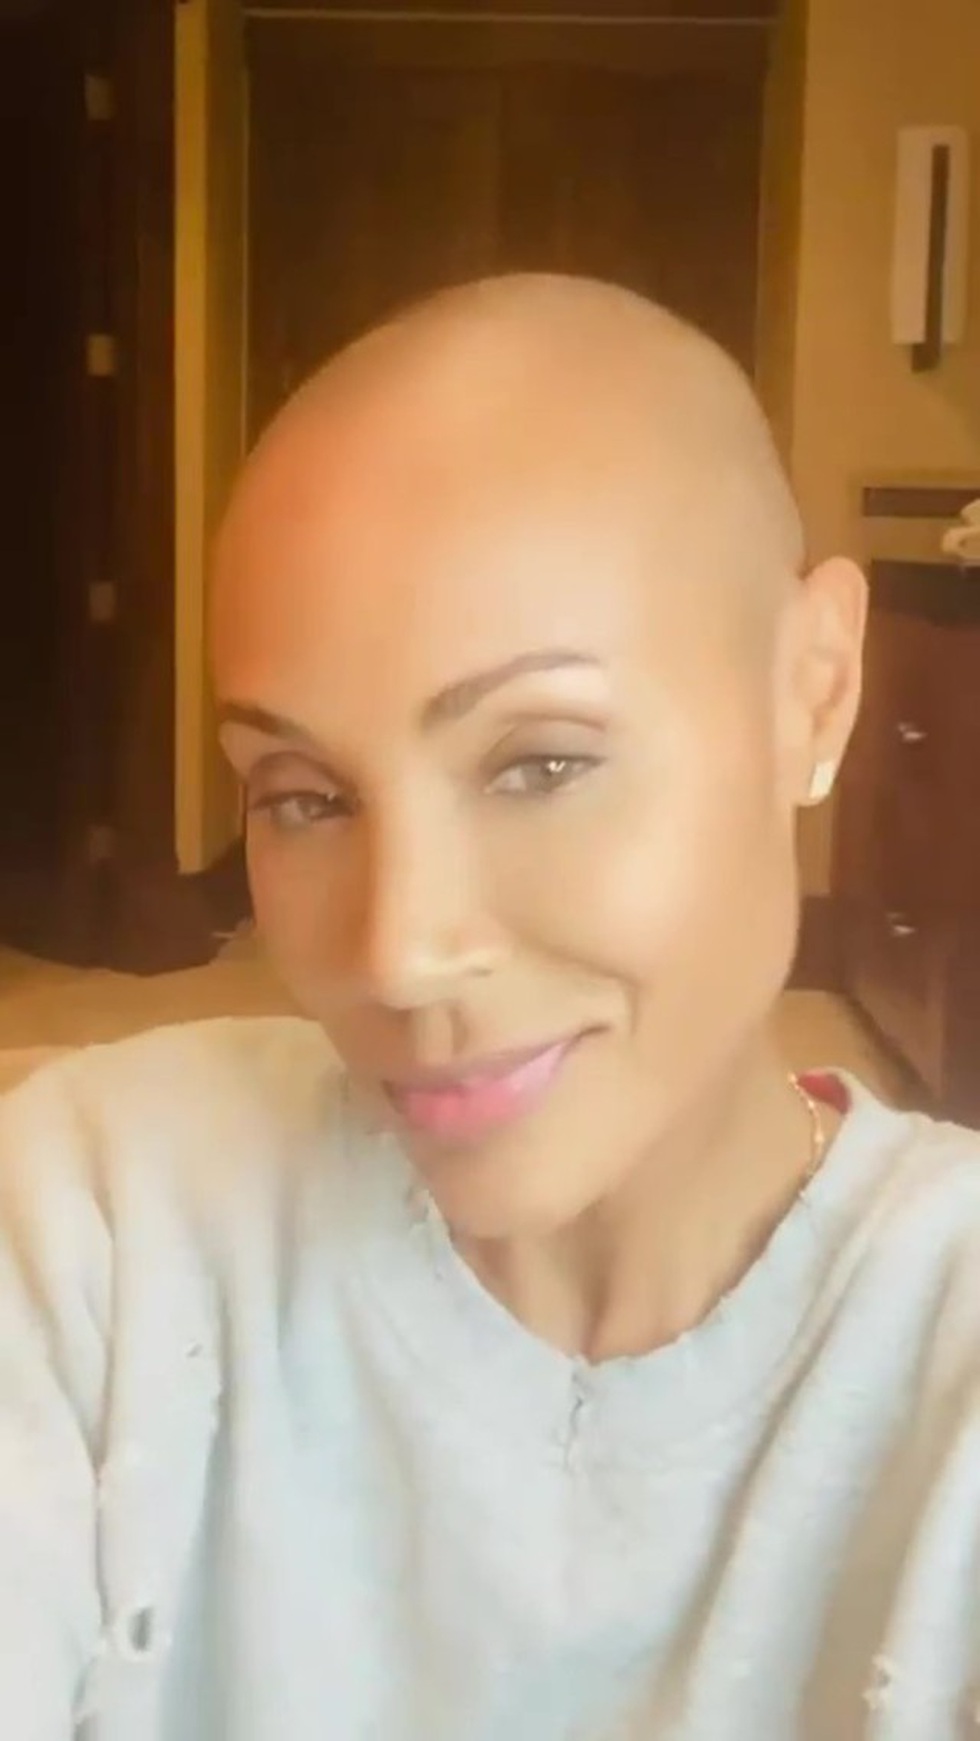 Jada khi thông báo trên Instagram về quyết định cạo đầu của mình